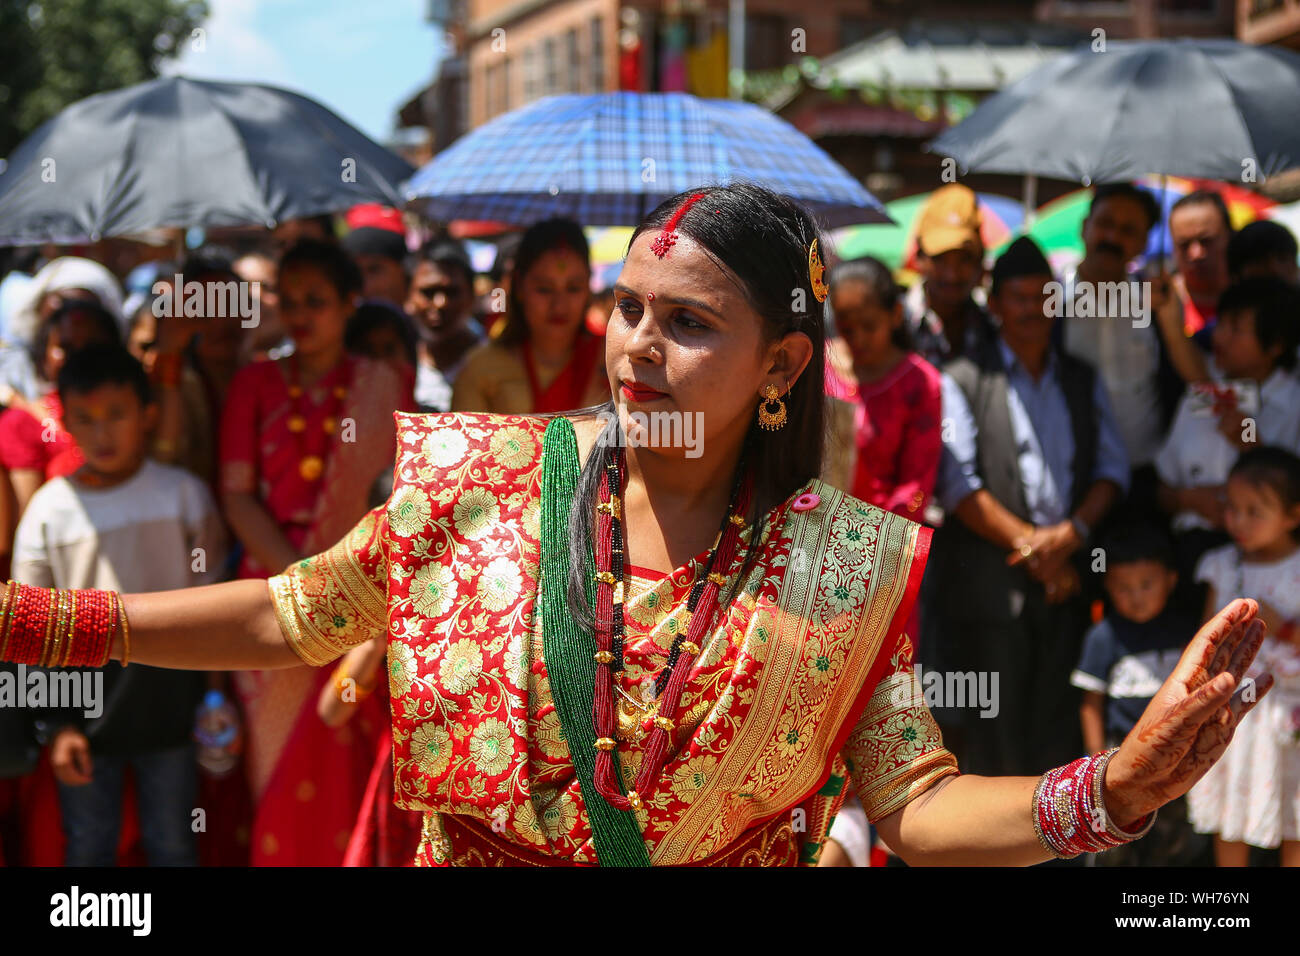 Katmandú, Nepal. 02Nd Sep, 2019. Una mujer hindú nepalí canta y baila tras ofrecer plegarias al Señor Shiva, el dios hindú de la destrucción durante el festival.Teej Festival es un festival de sólo mujeres celebrado por las mujeres hindúes. Durante el festival, las mujeres ayunar y orar por el matrimonio y la familia. Las mujeres solteras orar por un auspicioso futuro matrimonio, mientras que las mujeres casadas orar por dicha conyugal. El festival se celebra principalmente en la India, pero las mujeres nepalesas también celebrar Teej en su propia manera especial. Crédito: Sopa de imágenes limitado/Alamy Live News Foto de stock